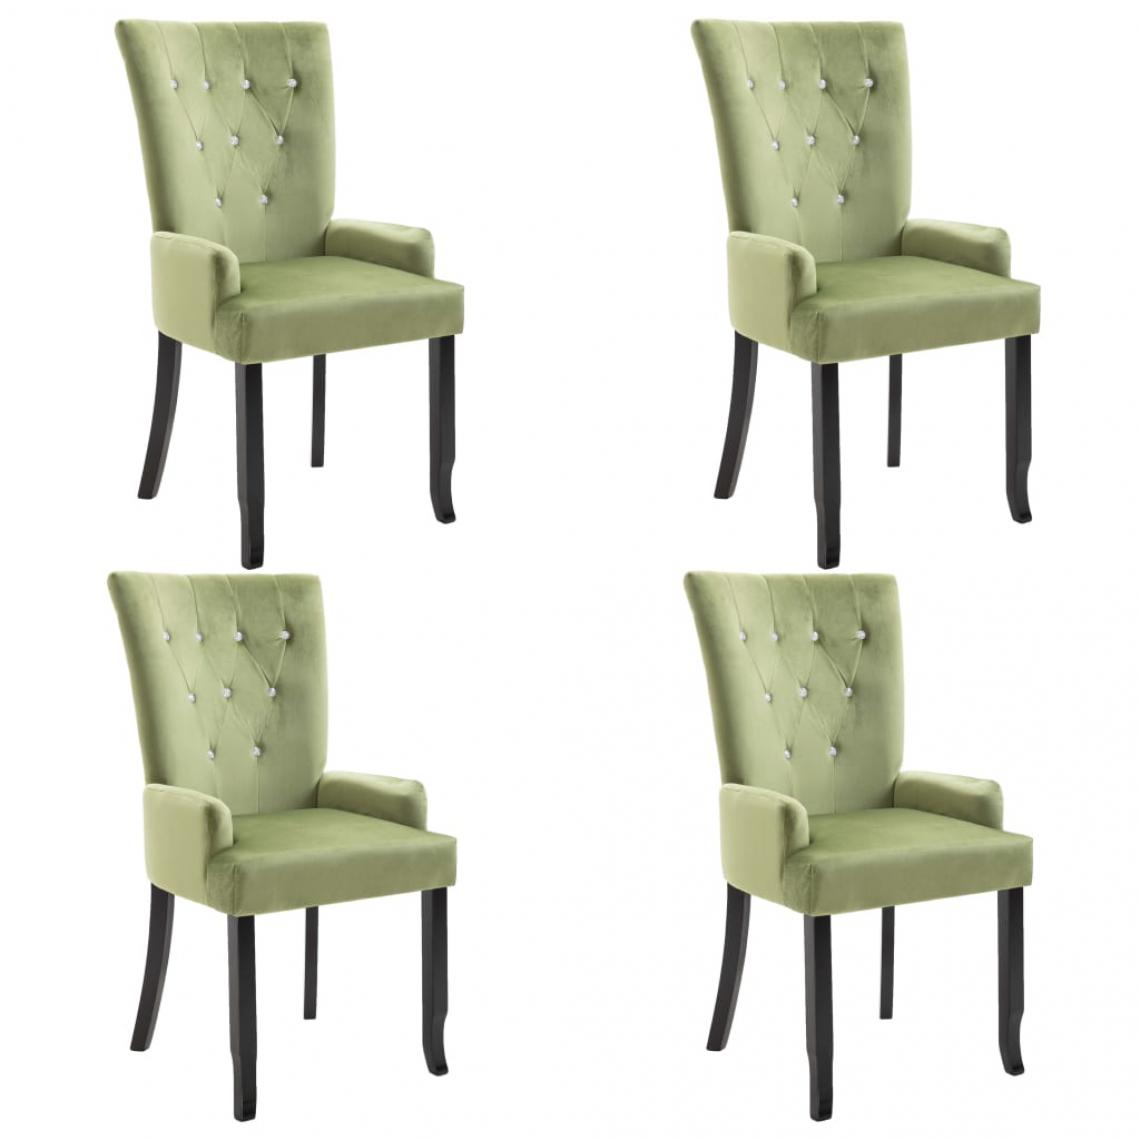 Decoshop26 - Lot de 4 chaises de salle à manger cuisine design rétro velours vert clair CDS022014 - Chaises